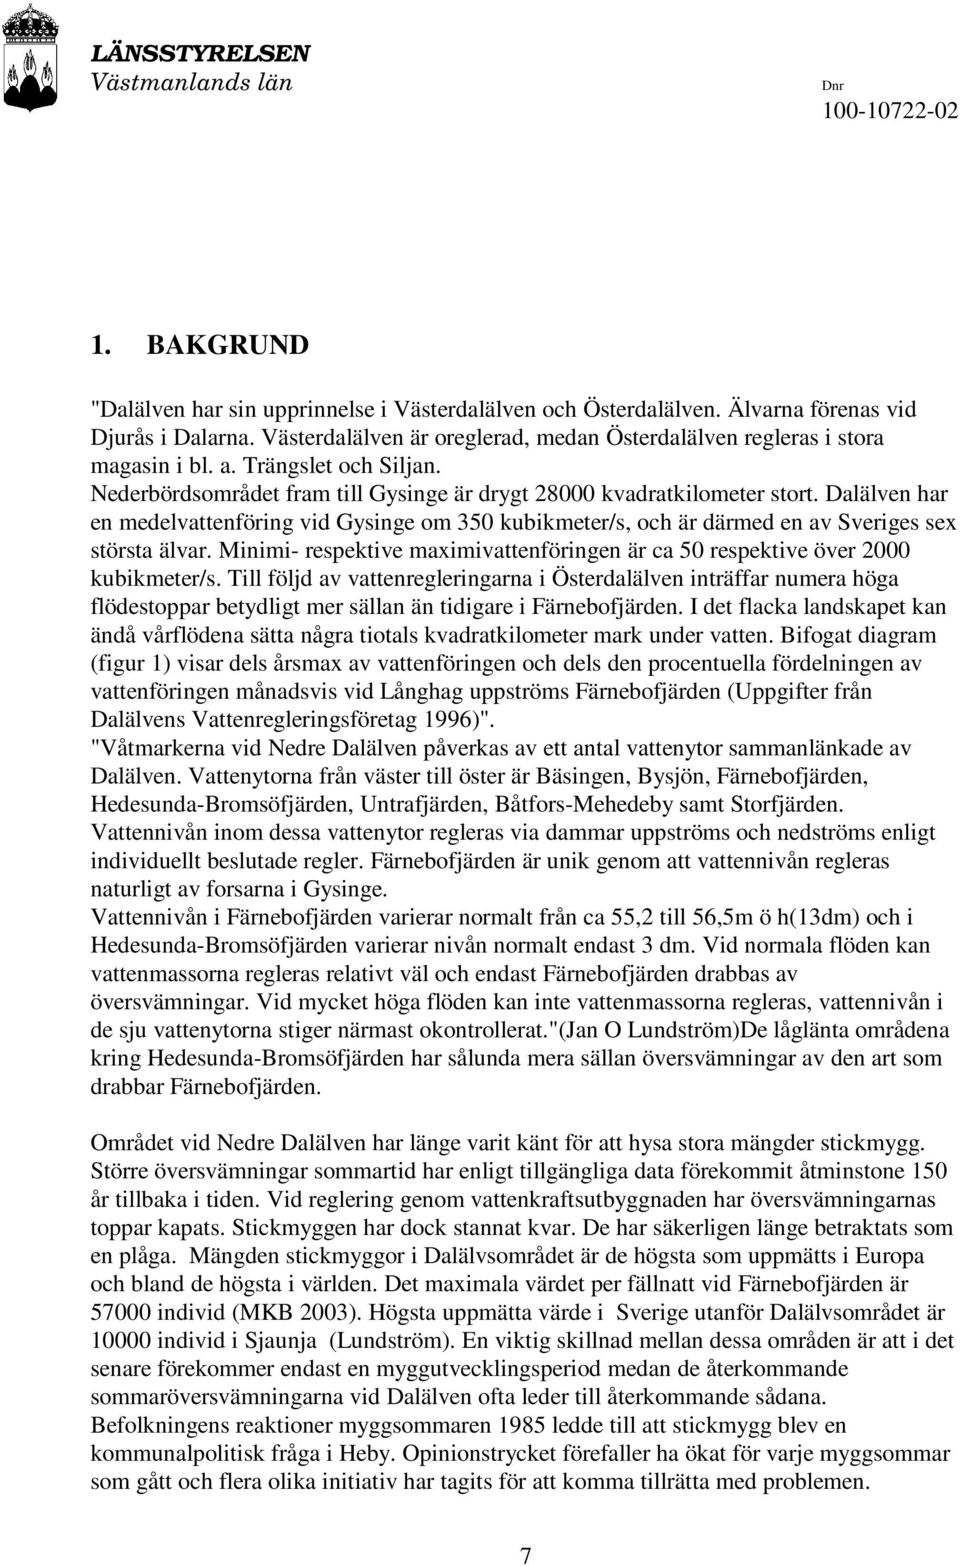 Dalälven har en medelvattenföring vid Gysinge om 350 kubikmeter/s, och är därmed en av Sveriges sex största älvar. Minimi- respektive maximivattenföringen är ca 50 respektive över 2000 kubikmeter/s.